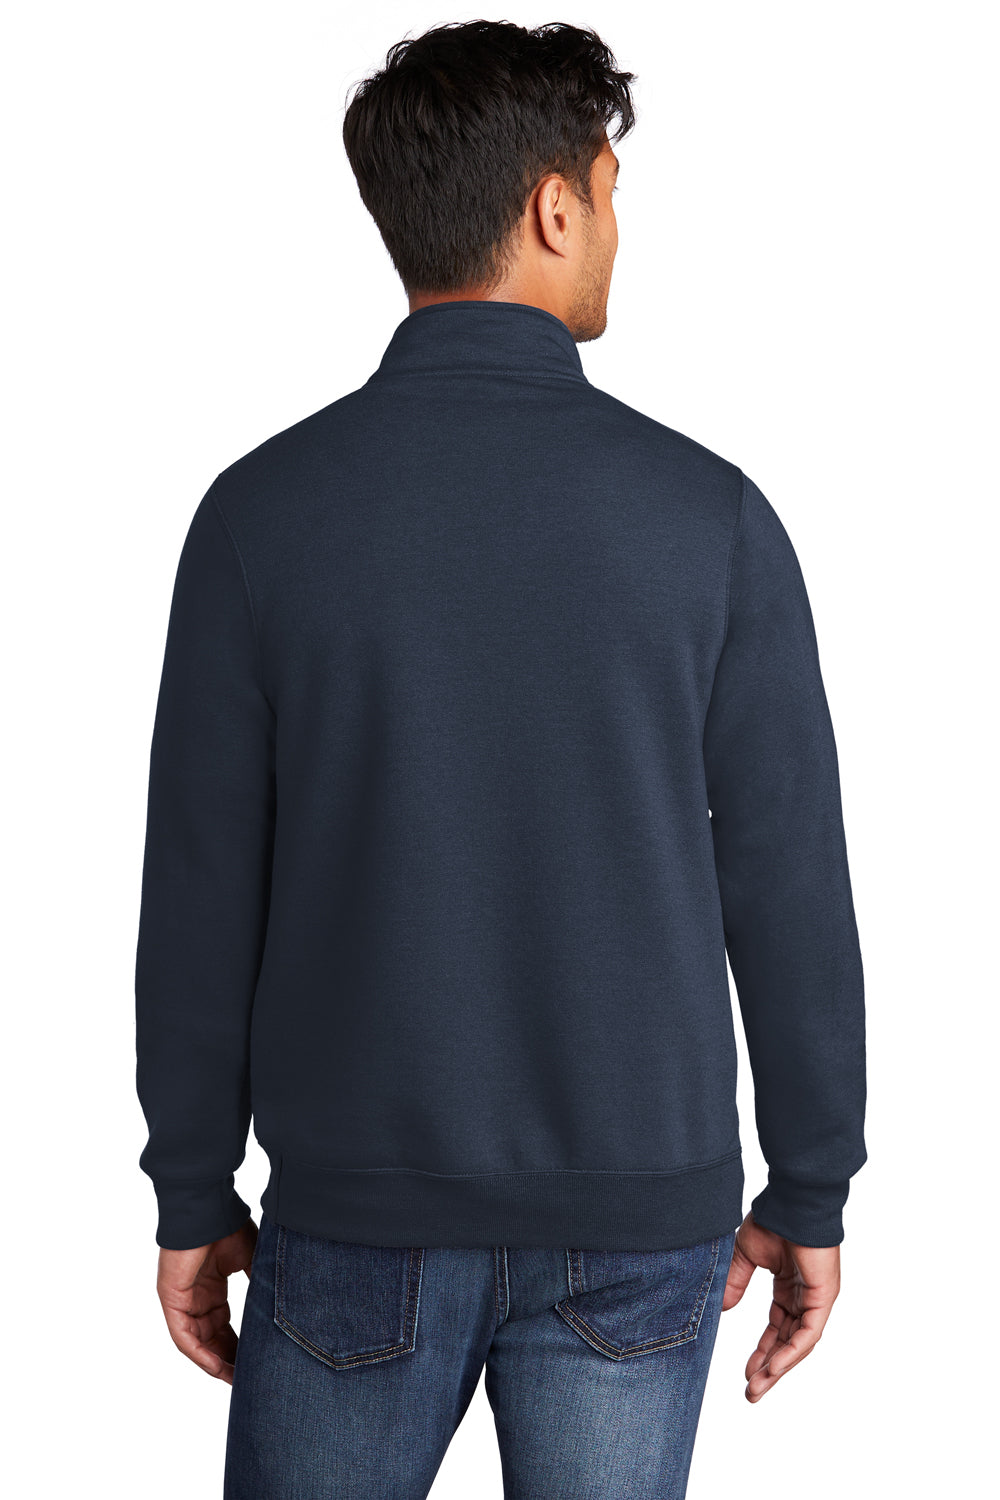 Port & Company Mens Core Fleece 1/4 Zip Sweatshirt Navy Blue Side